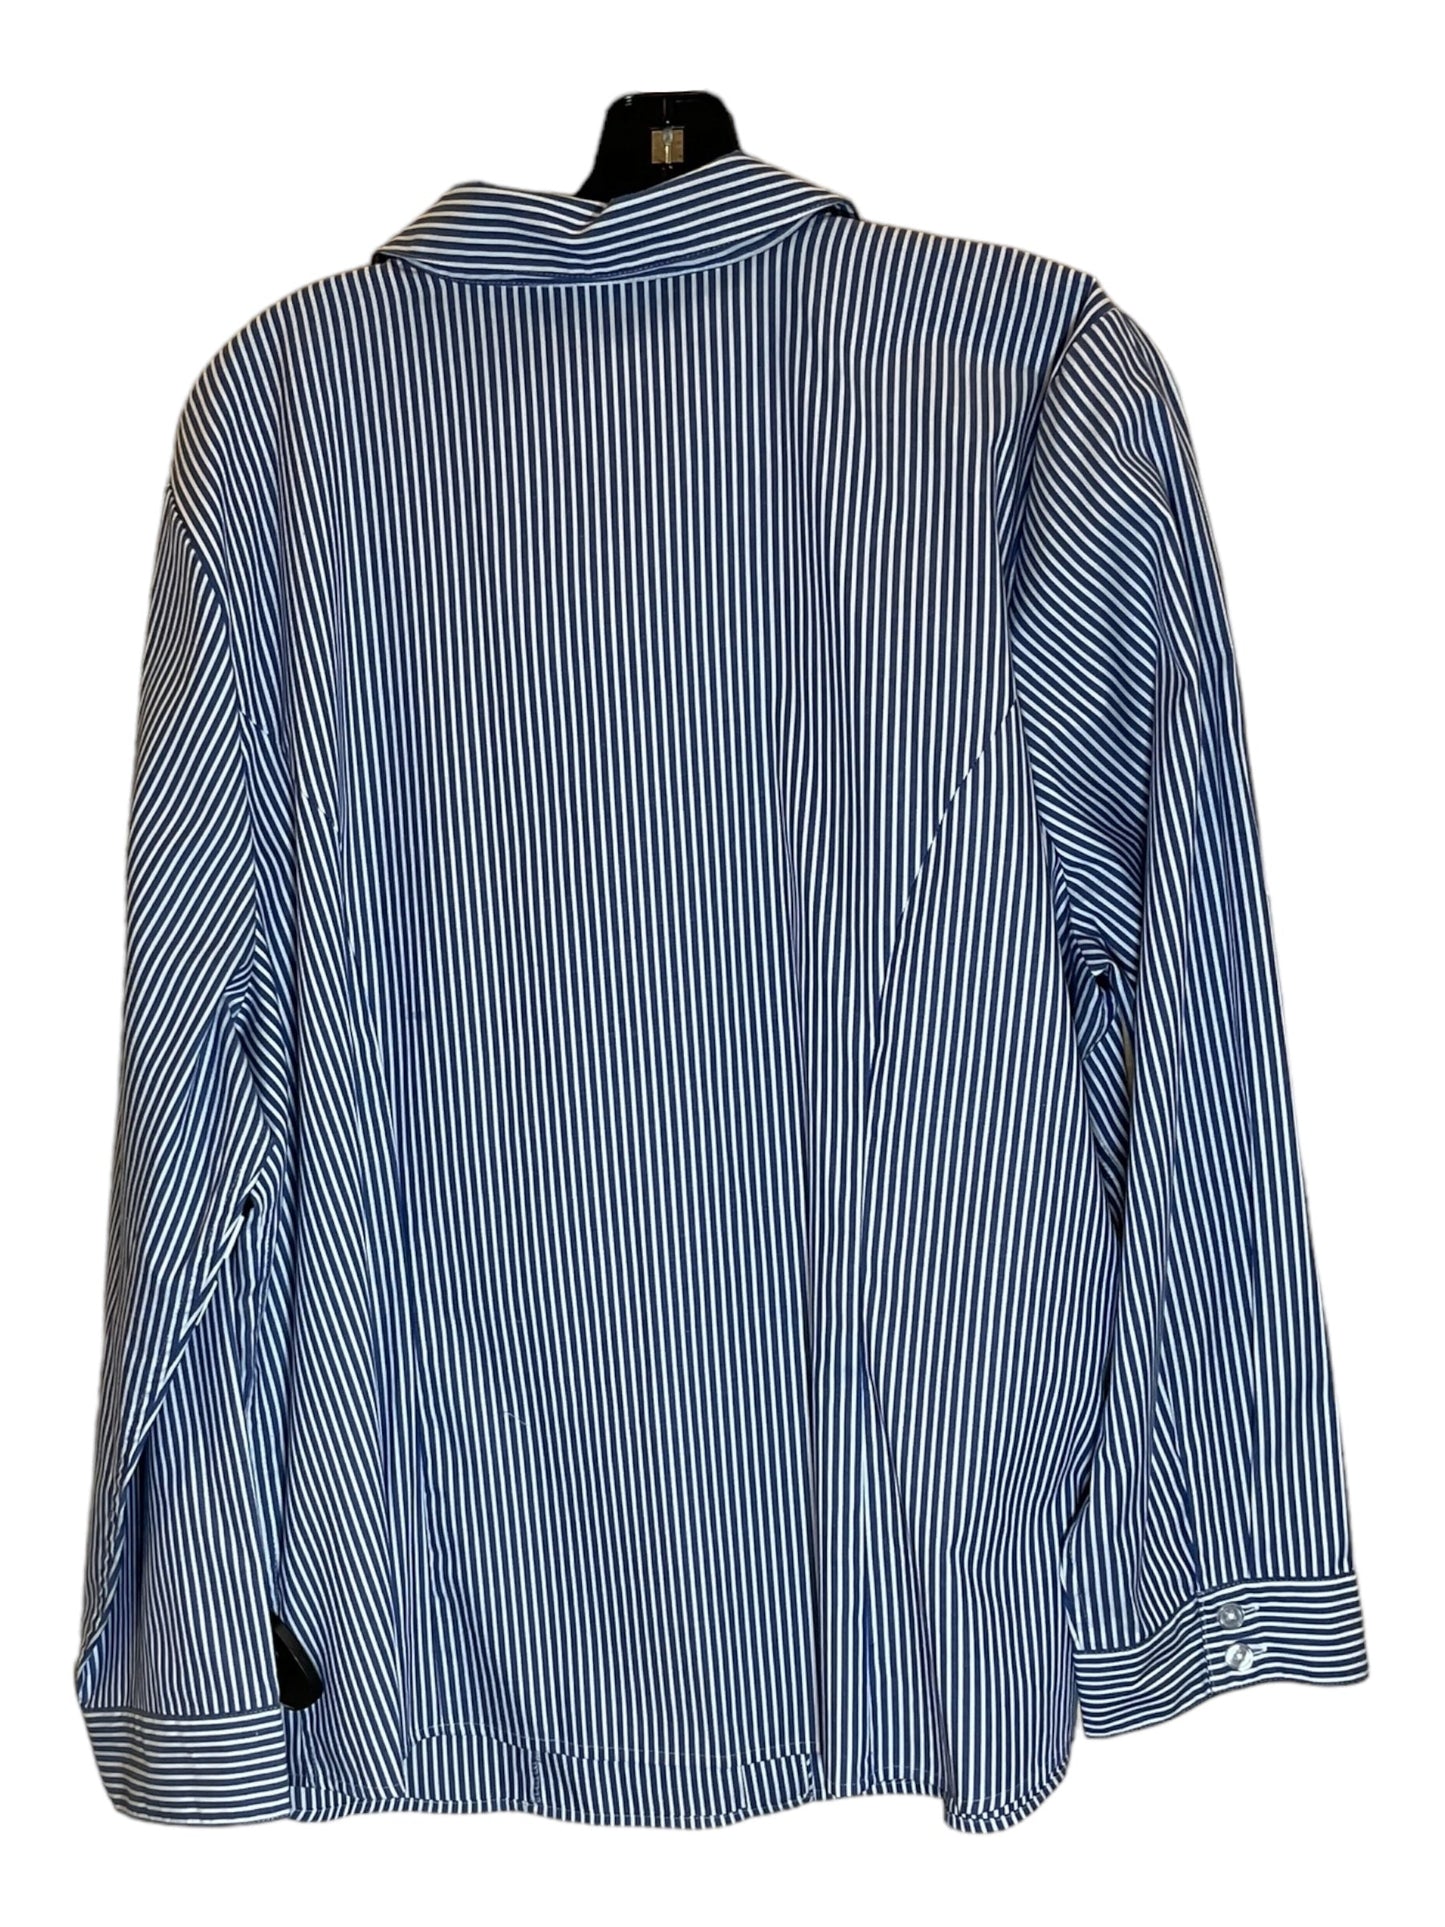 Striped Pattern Blouse Long Sleeve Cj Banks, Size 2x